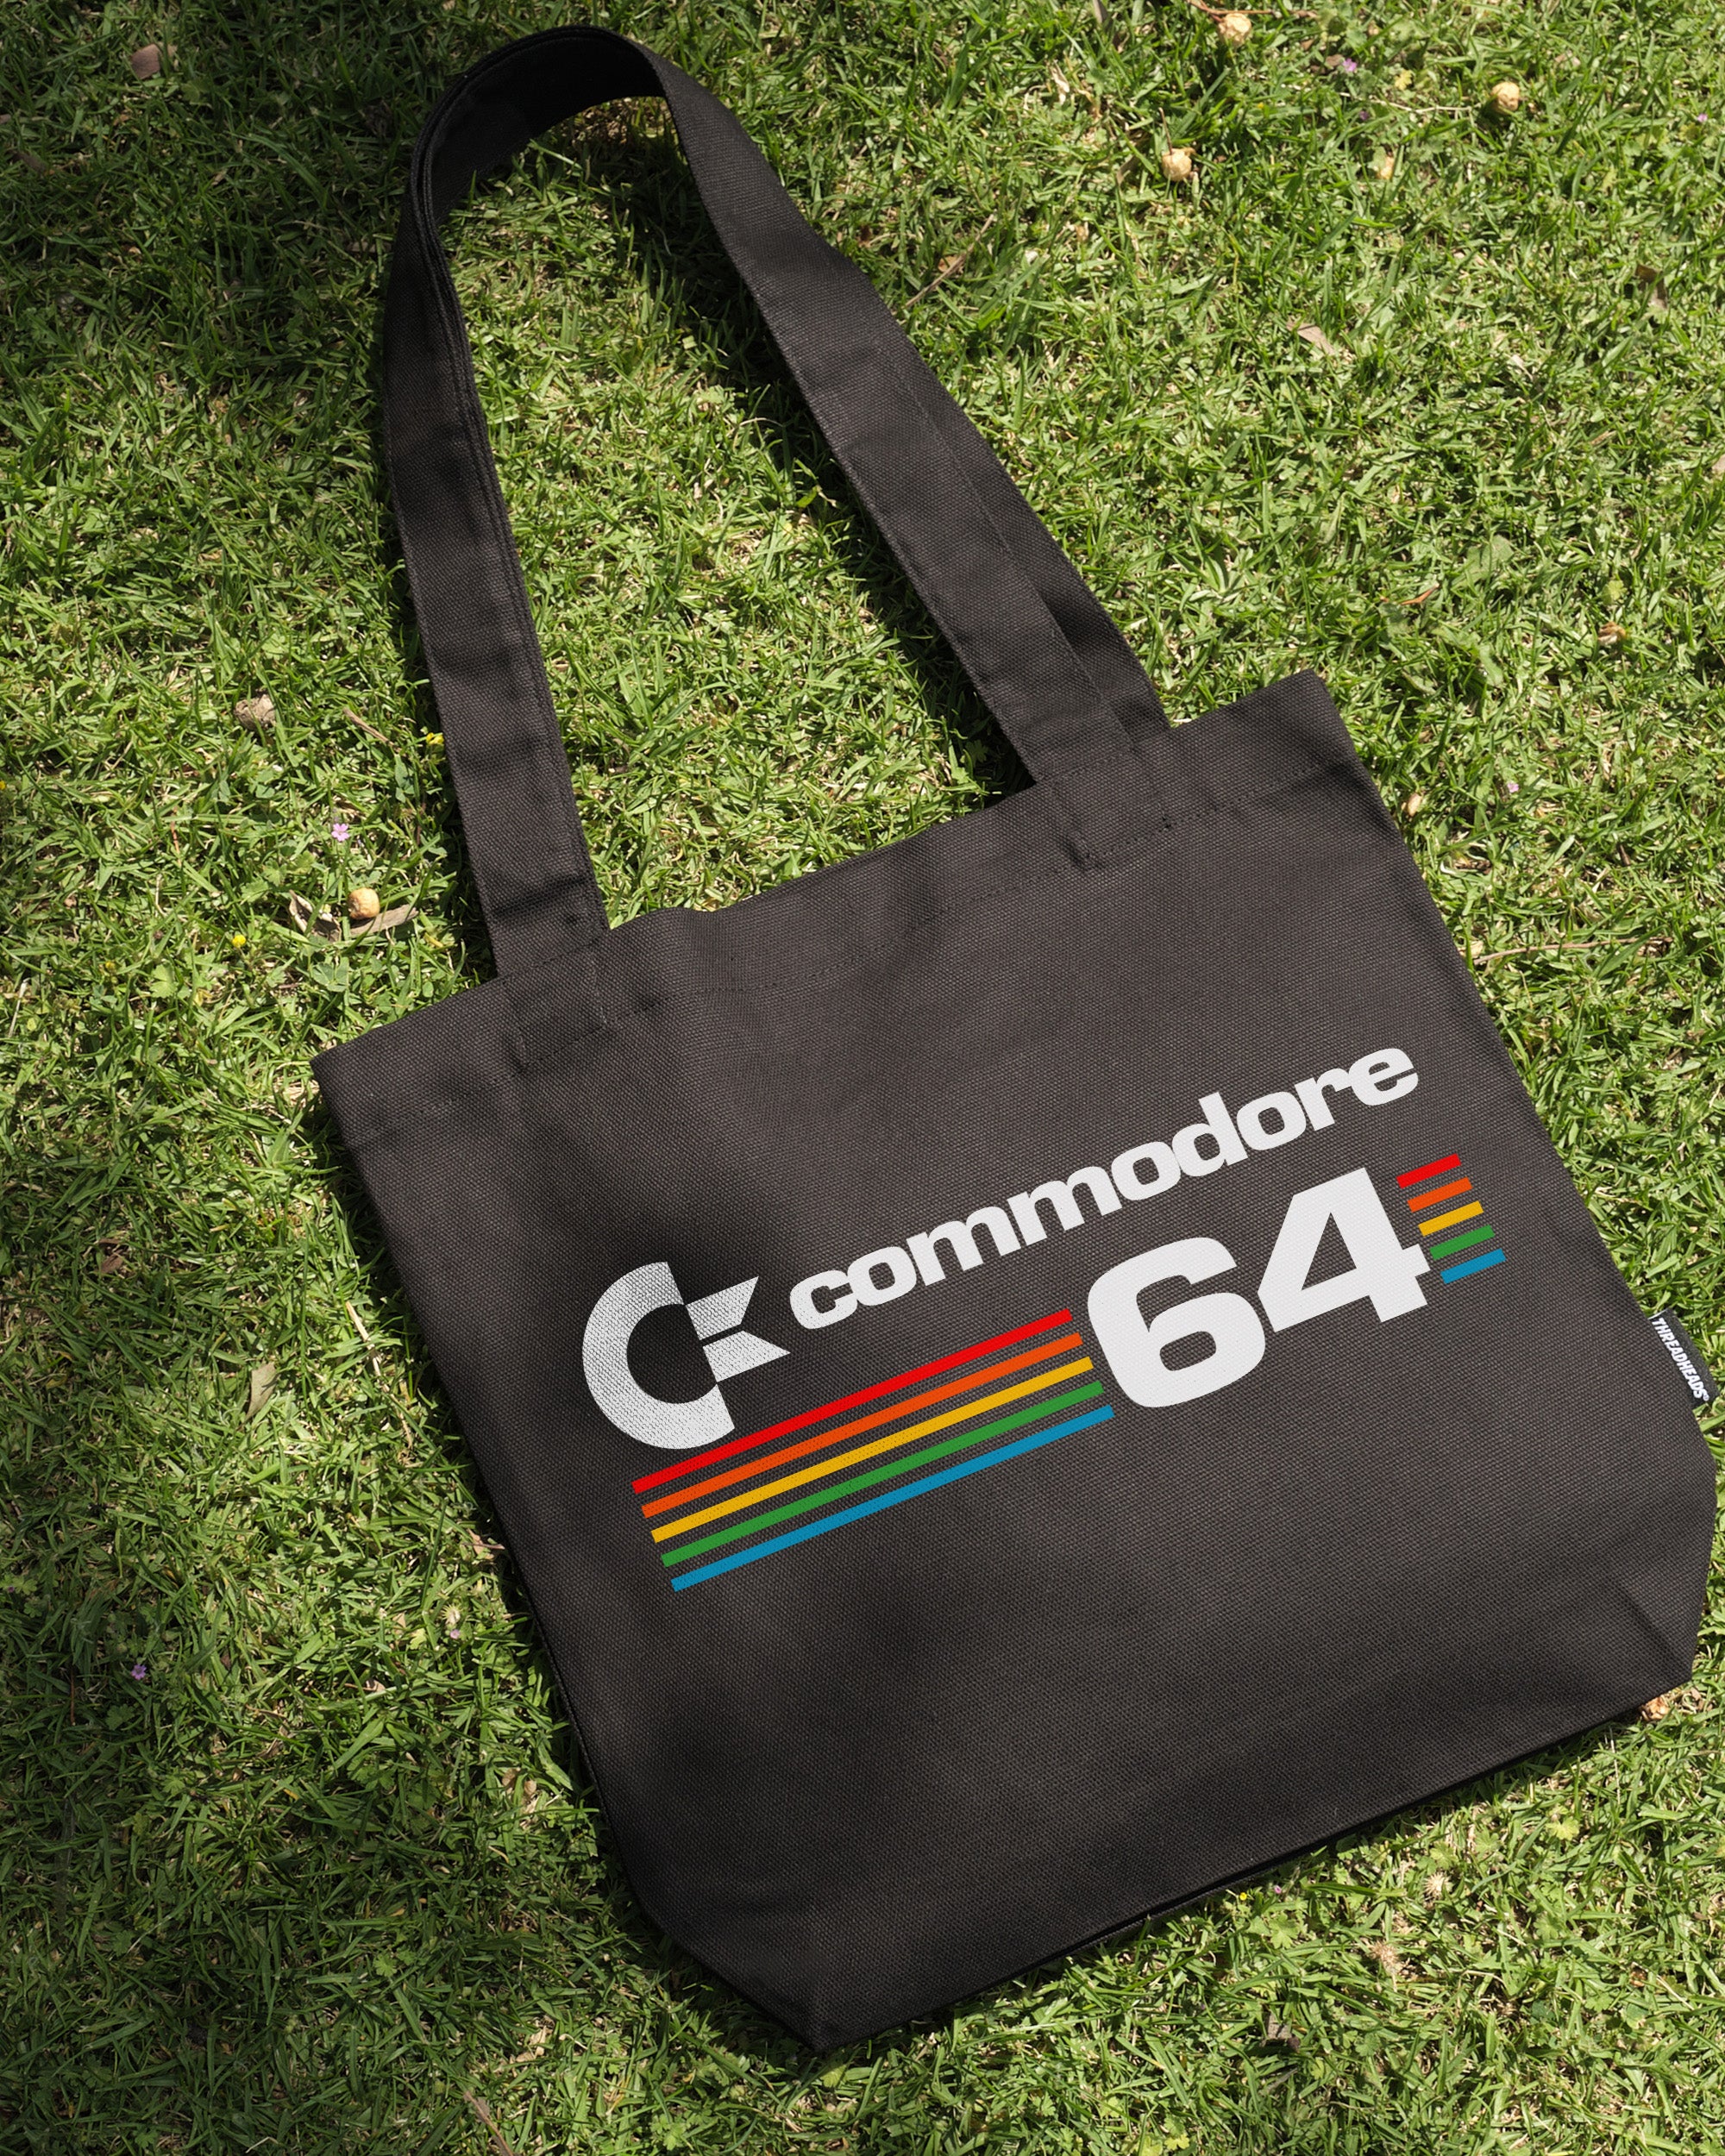 Commodore 64 Tote Bag Australia Online